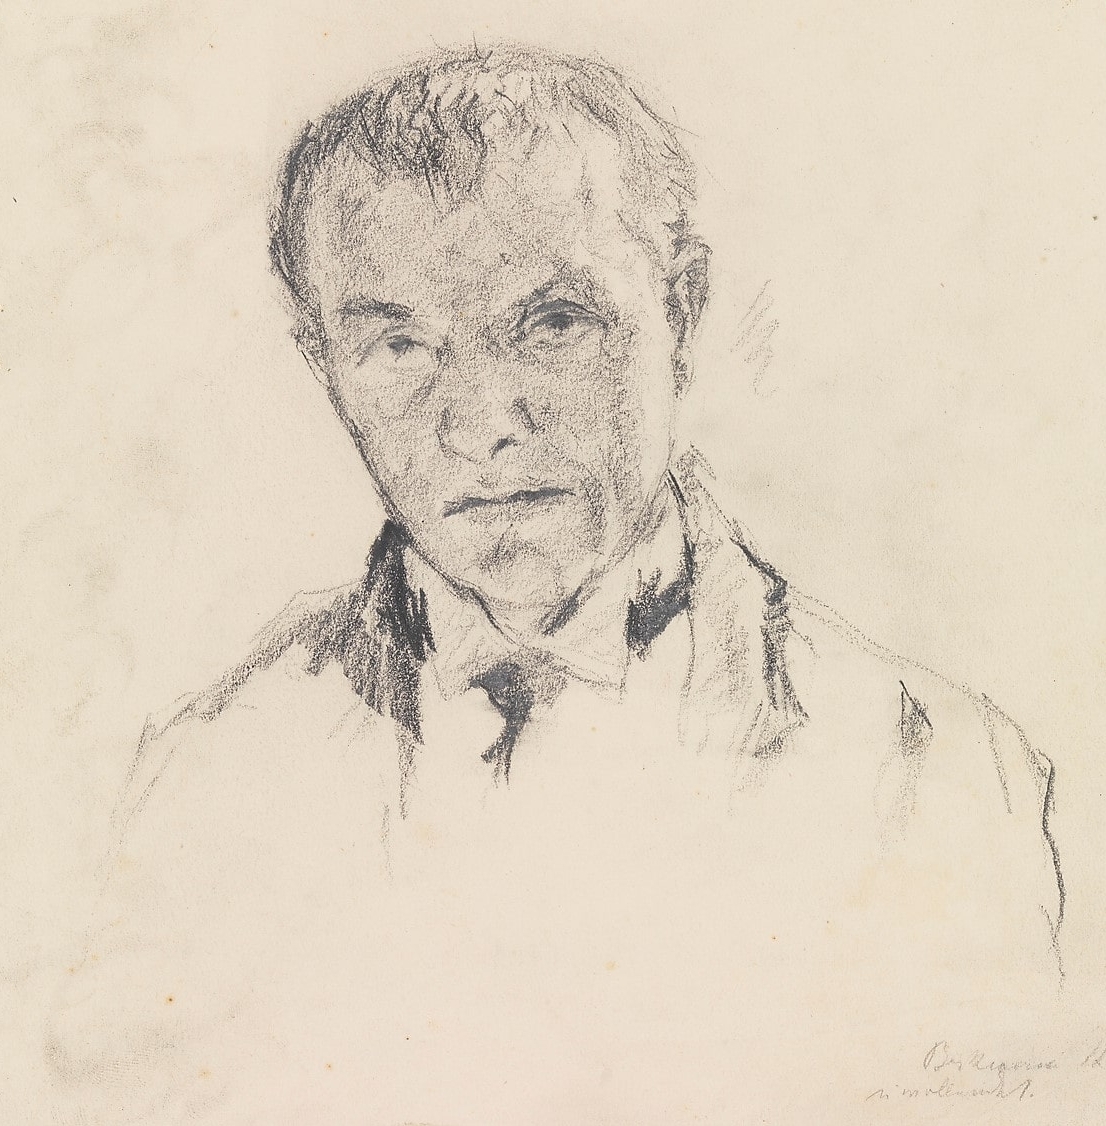 Ein unvollendetes Selbstporträt von Max Beckmann. Mit Bleistift 1912 gezeichnet